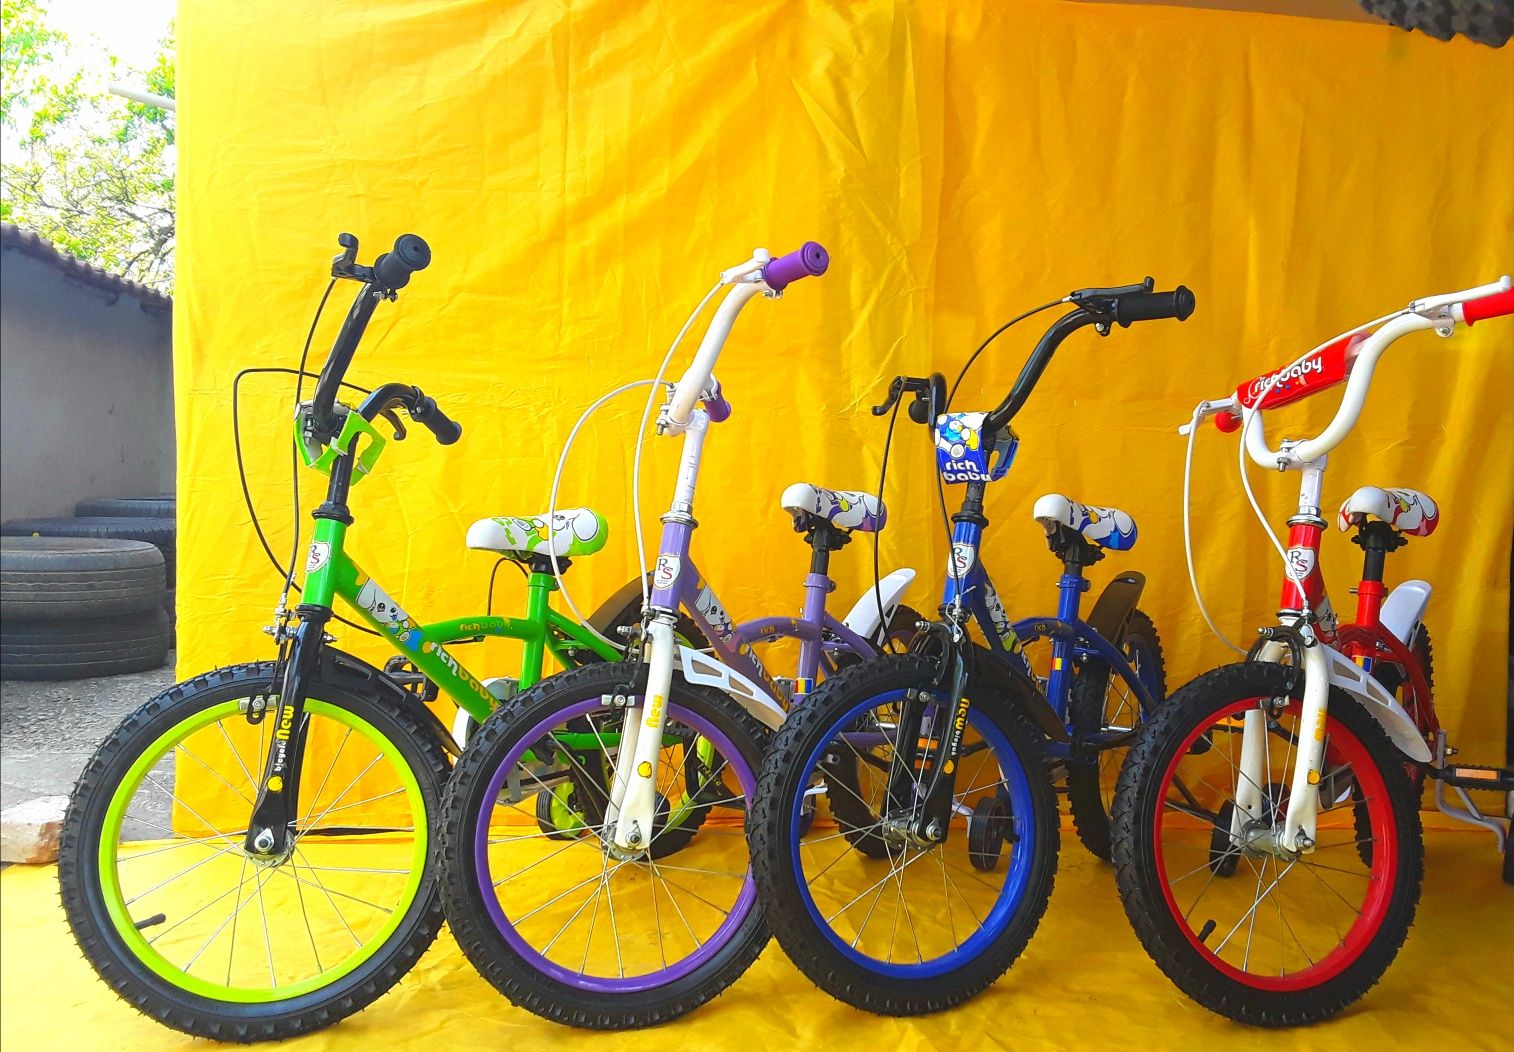 Biciclete cu roti 16 recomandată copiilor 4-7 Ani - NOUA - 390 Lei